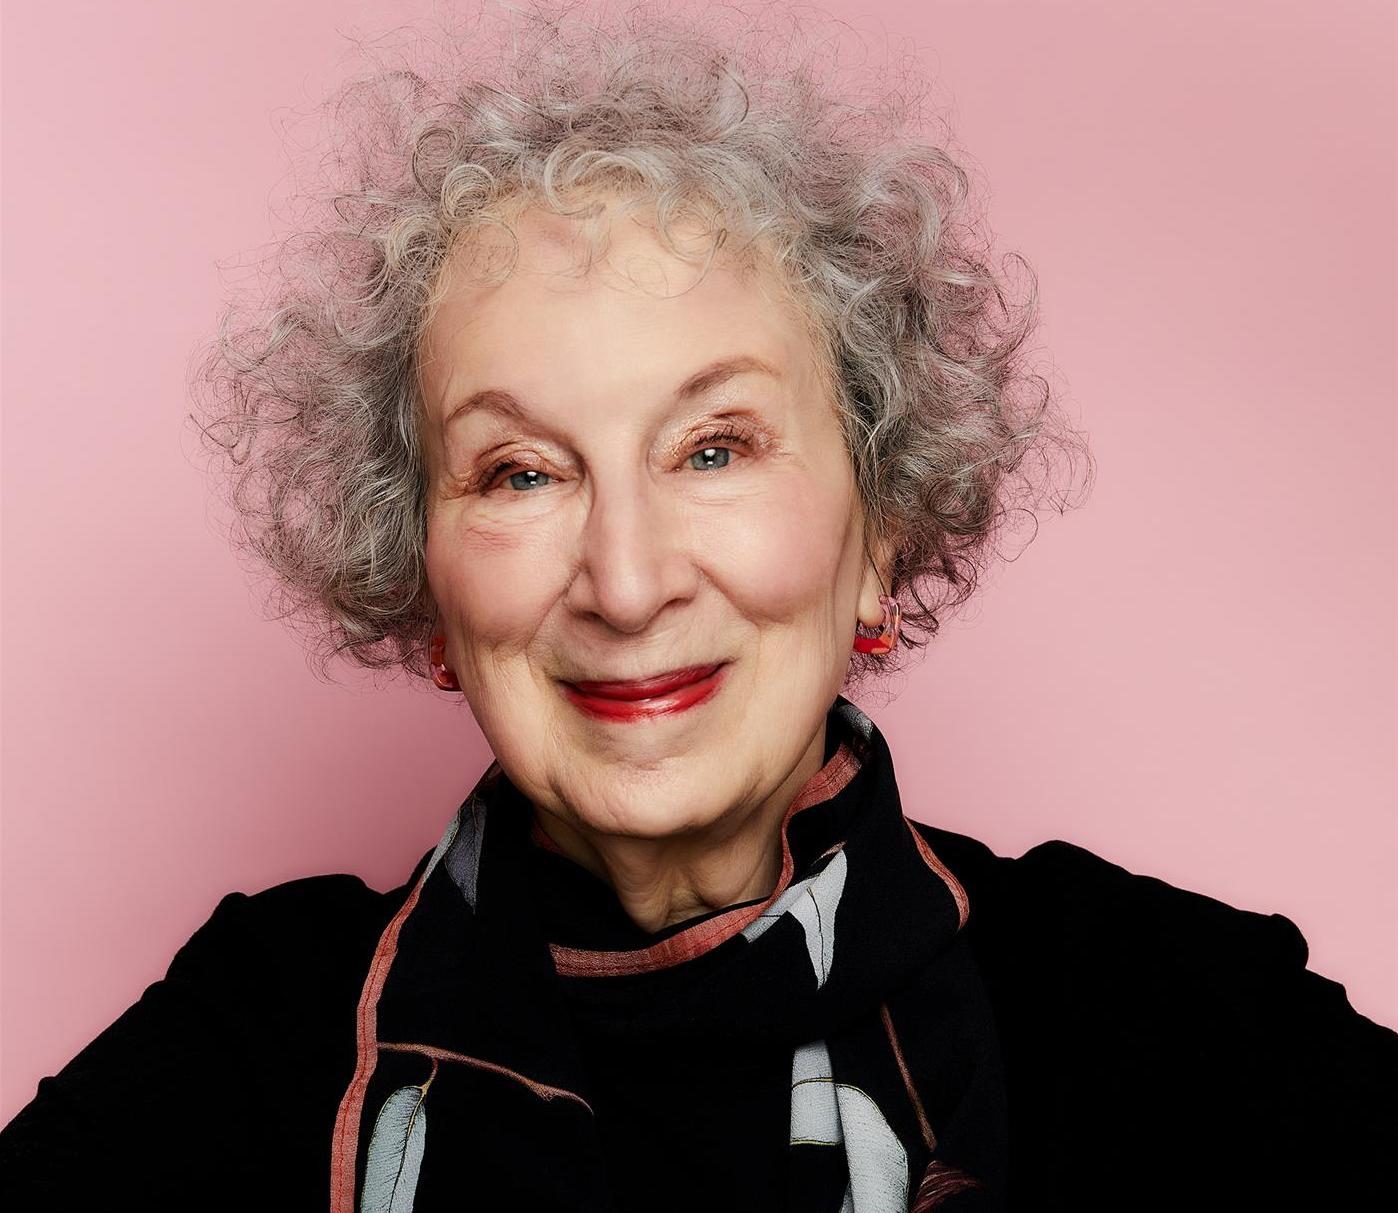 Den kanadensiska författaren Margaret Atwood har belönats med en mängd litterära priser och mottagit flera hedersdoktorat. År 2000 fick hon Bookerpriset för ”Den blinde mördaren”. Hon är nu aktuell på svenska med novellsamlingen ”Gammal kärlek”.